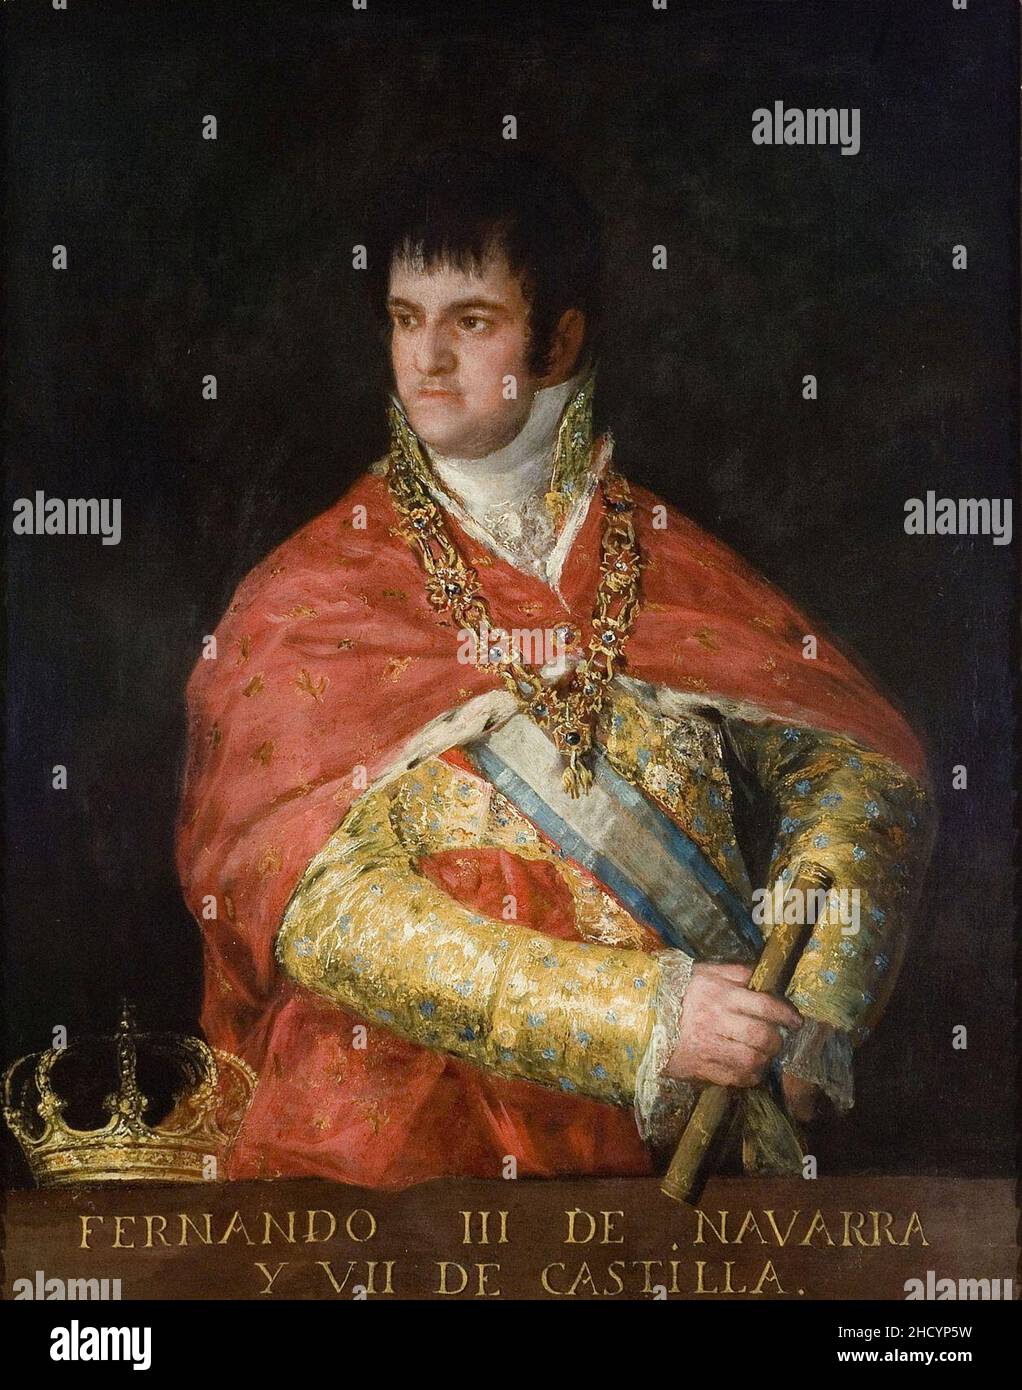 Retrato de Fernando VII (busto), Francisco de Goya. Stock Photo